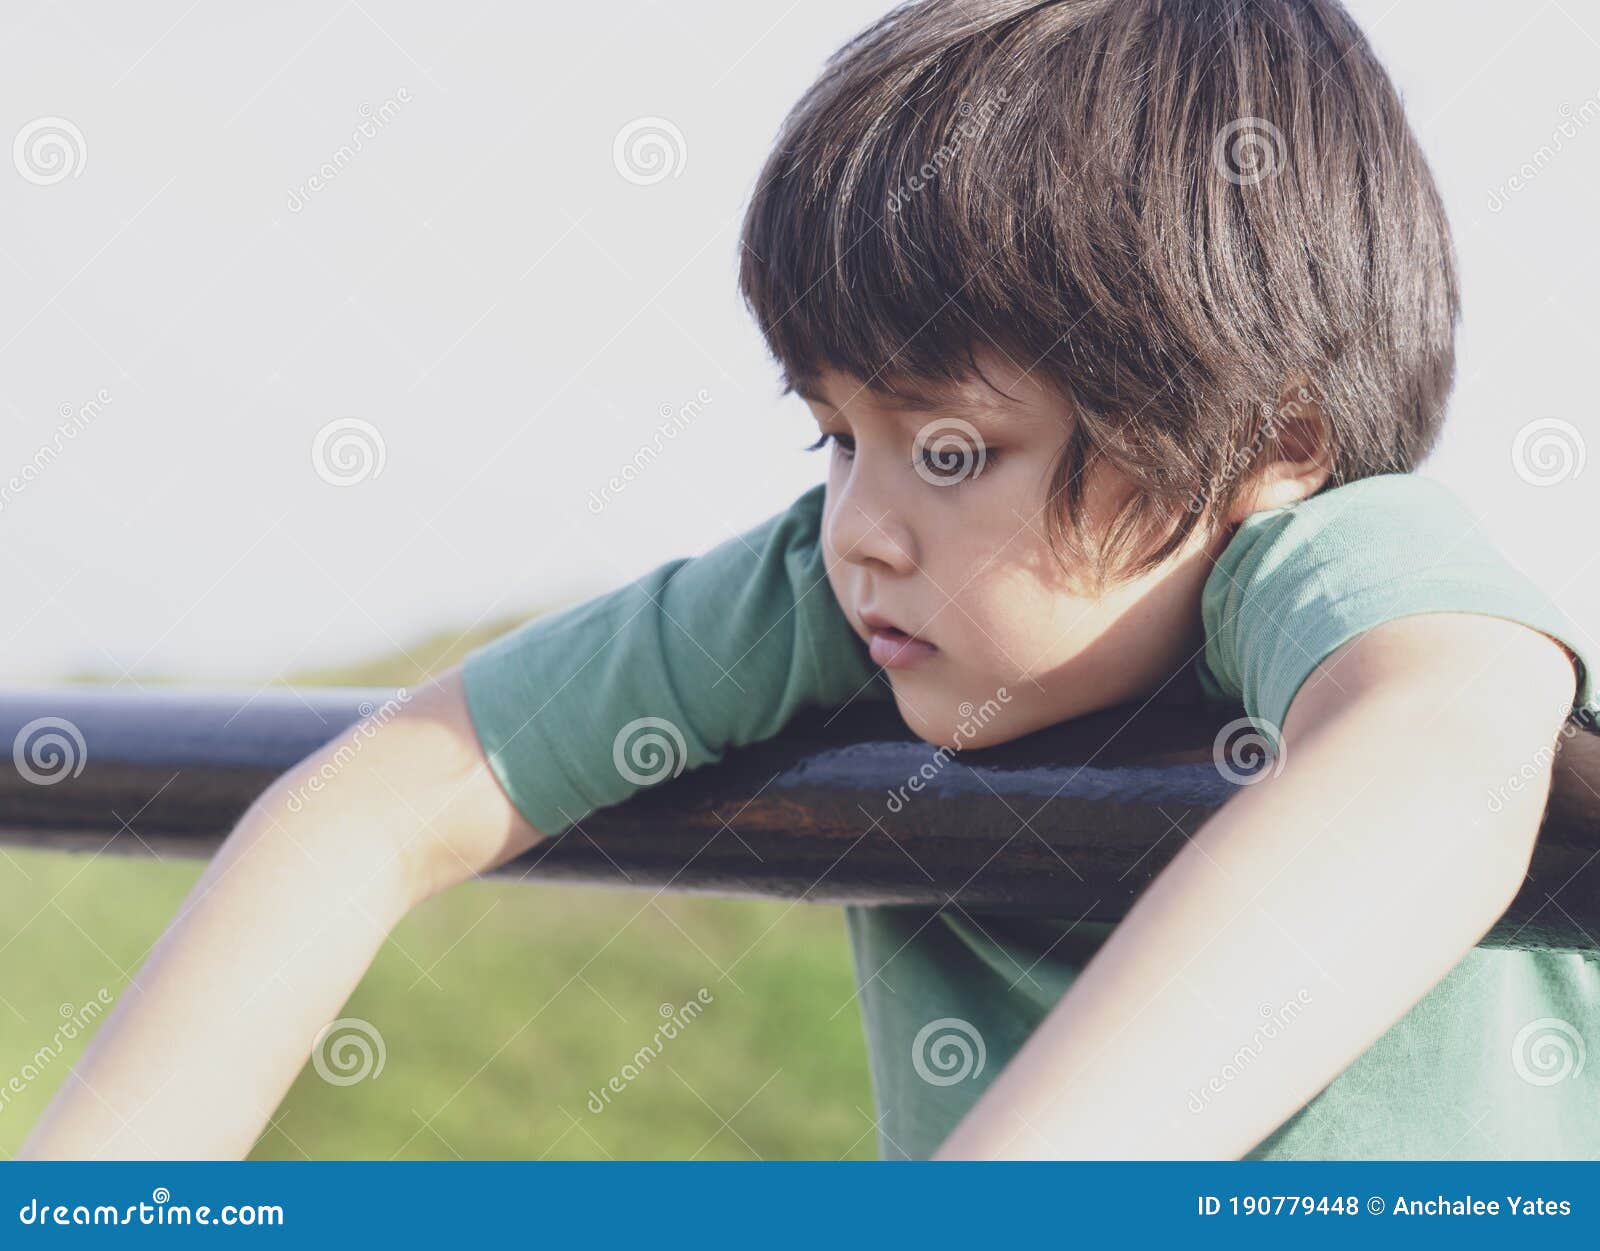 Criança triste criança deprimida parecendo solitária criança triste sentada  sozinha e chorando indefesa